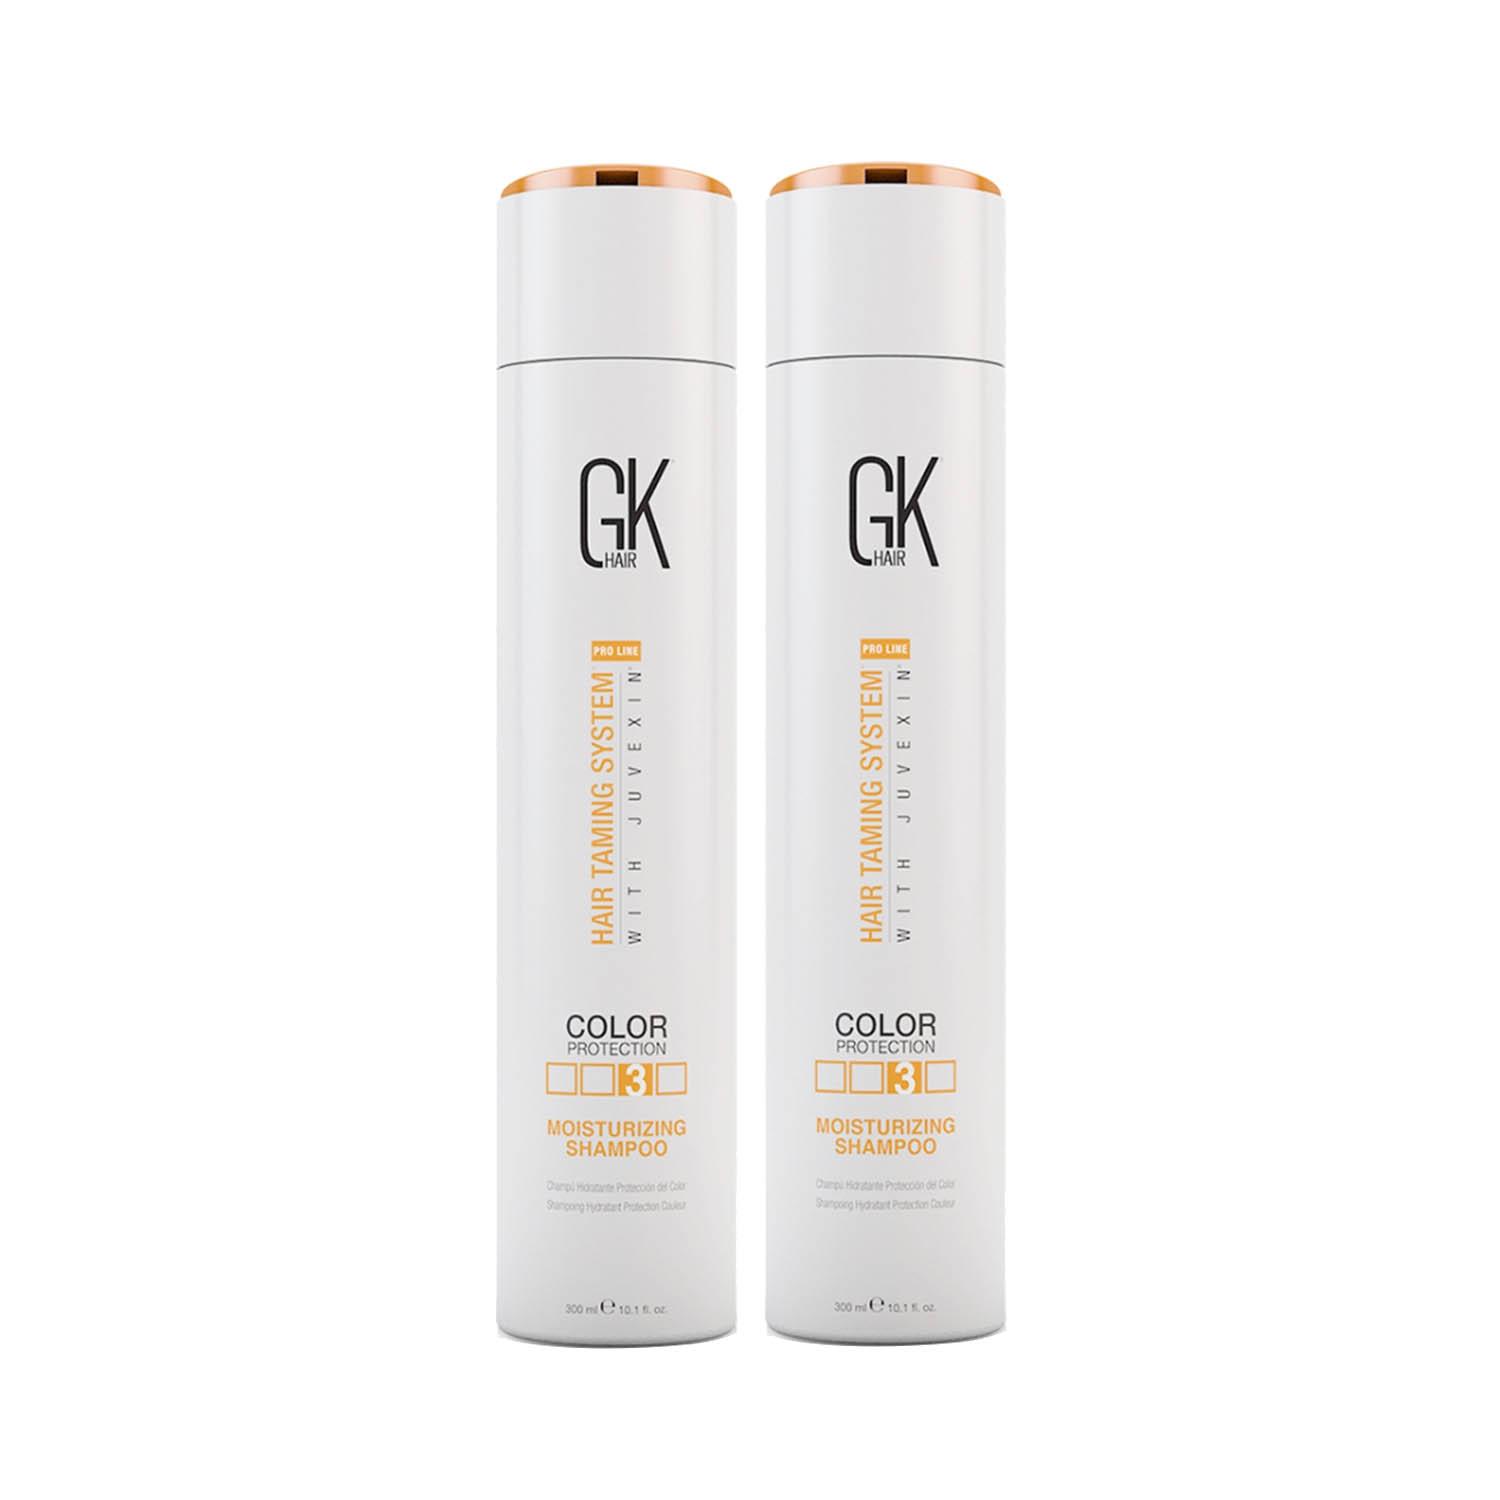 GK Hair Moisturizing Shampoo 300ml Pack of 2